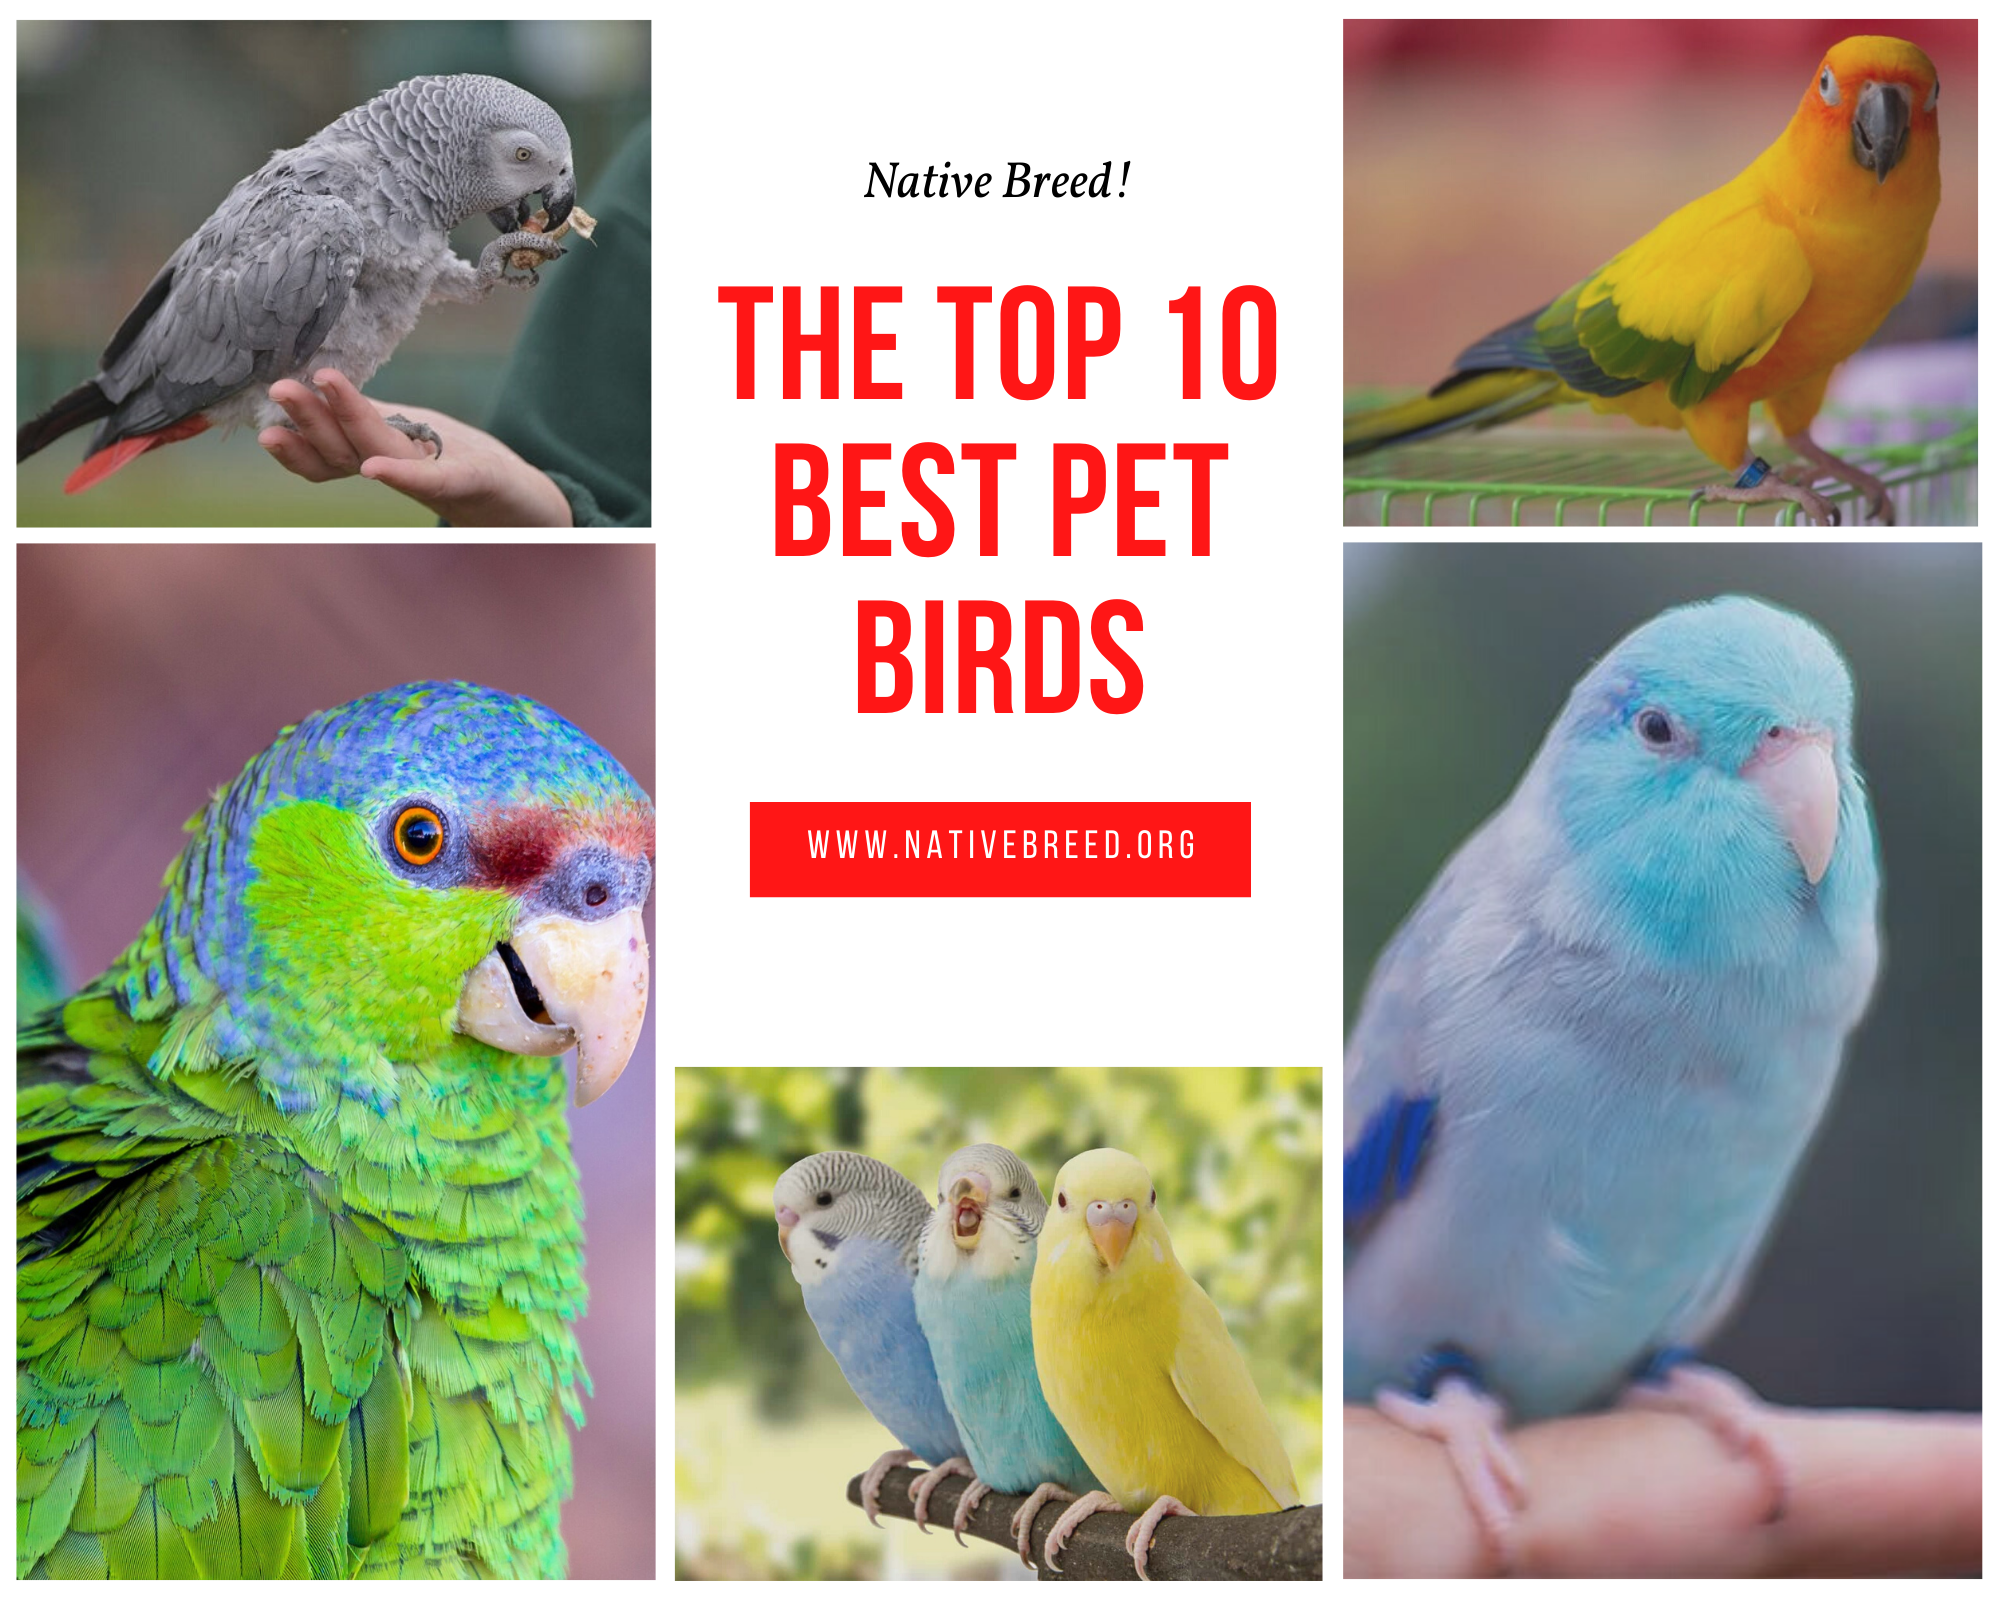 The Top 10 Best Pet Birds